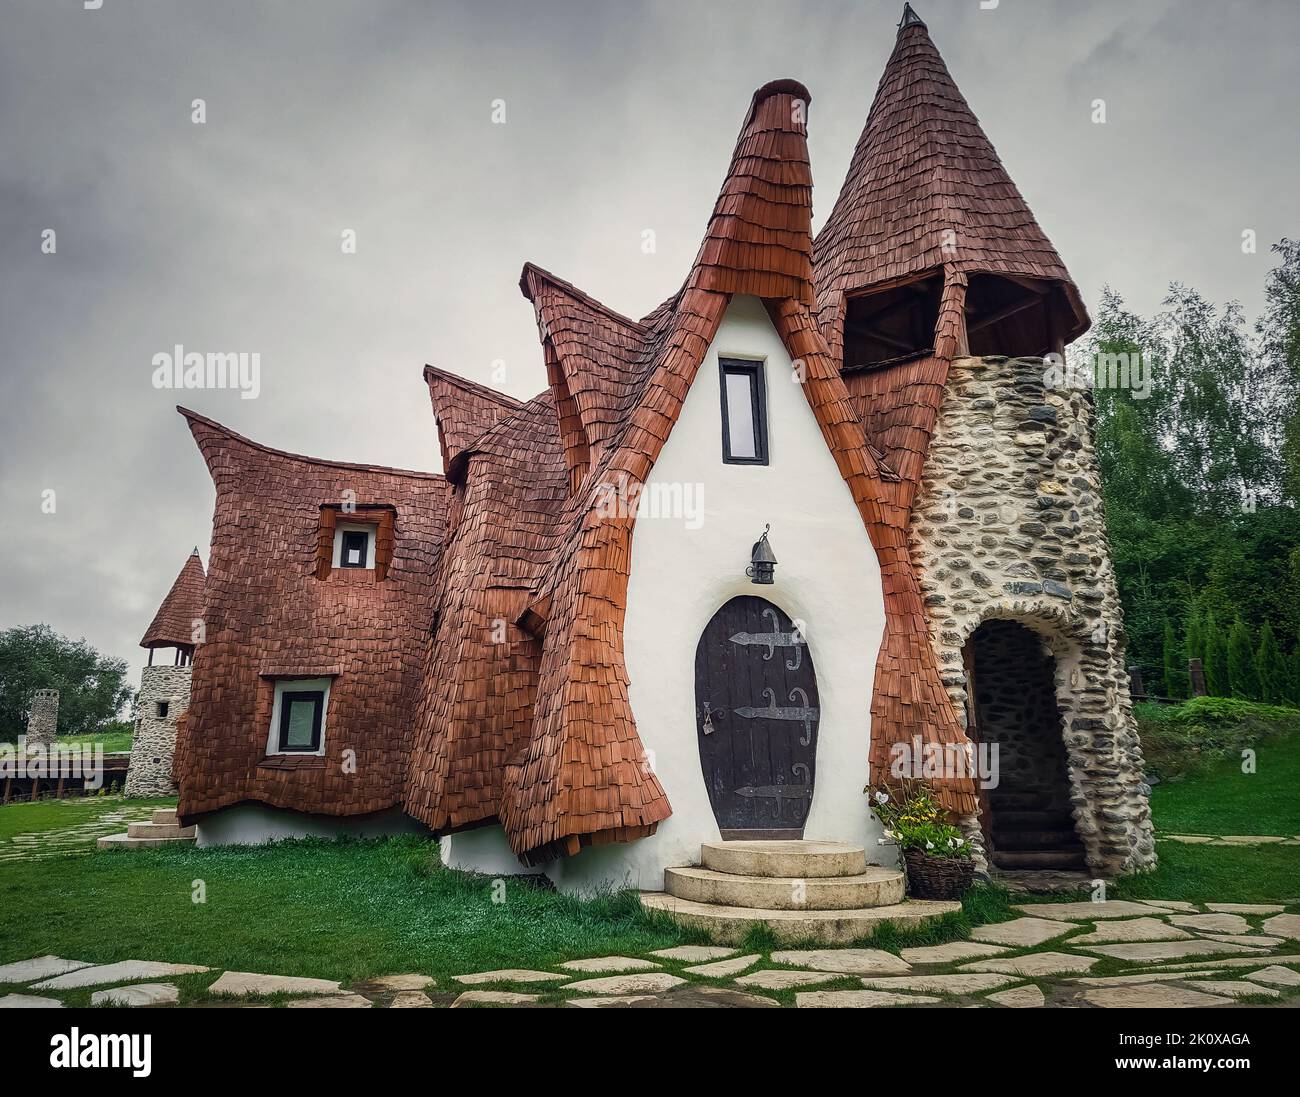 Le château de Clay de la vallée des Fées, un complexe touristique de Transylvanie, Roumanie. La maison des nains ou des hobbits de contes fantastiques Banque D'Images